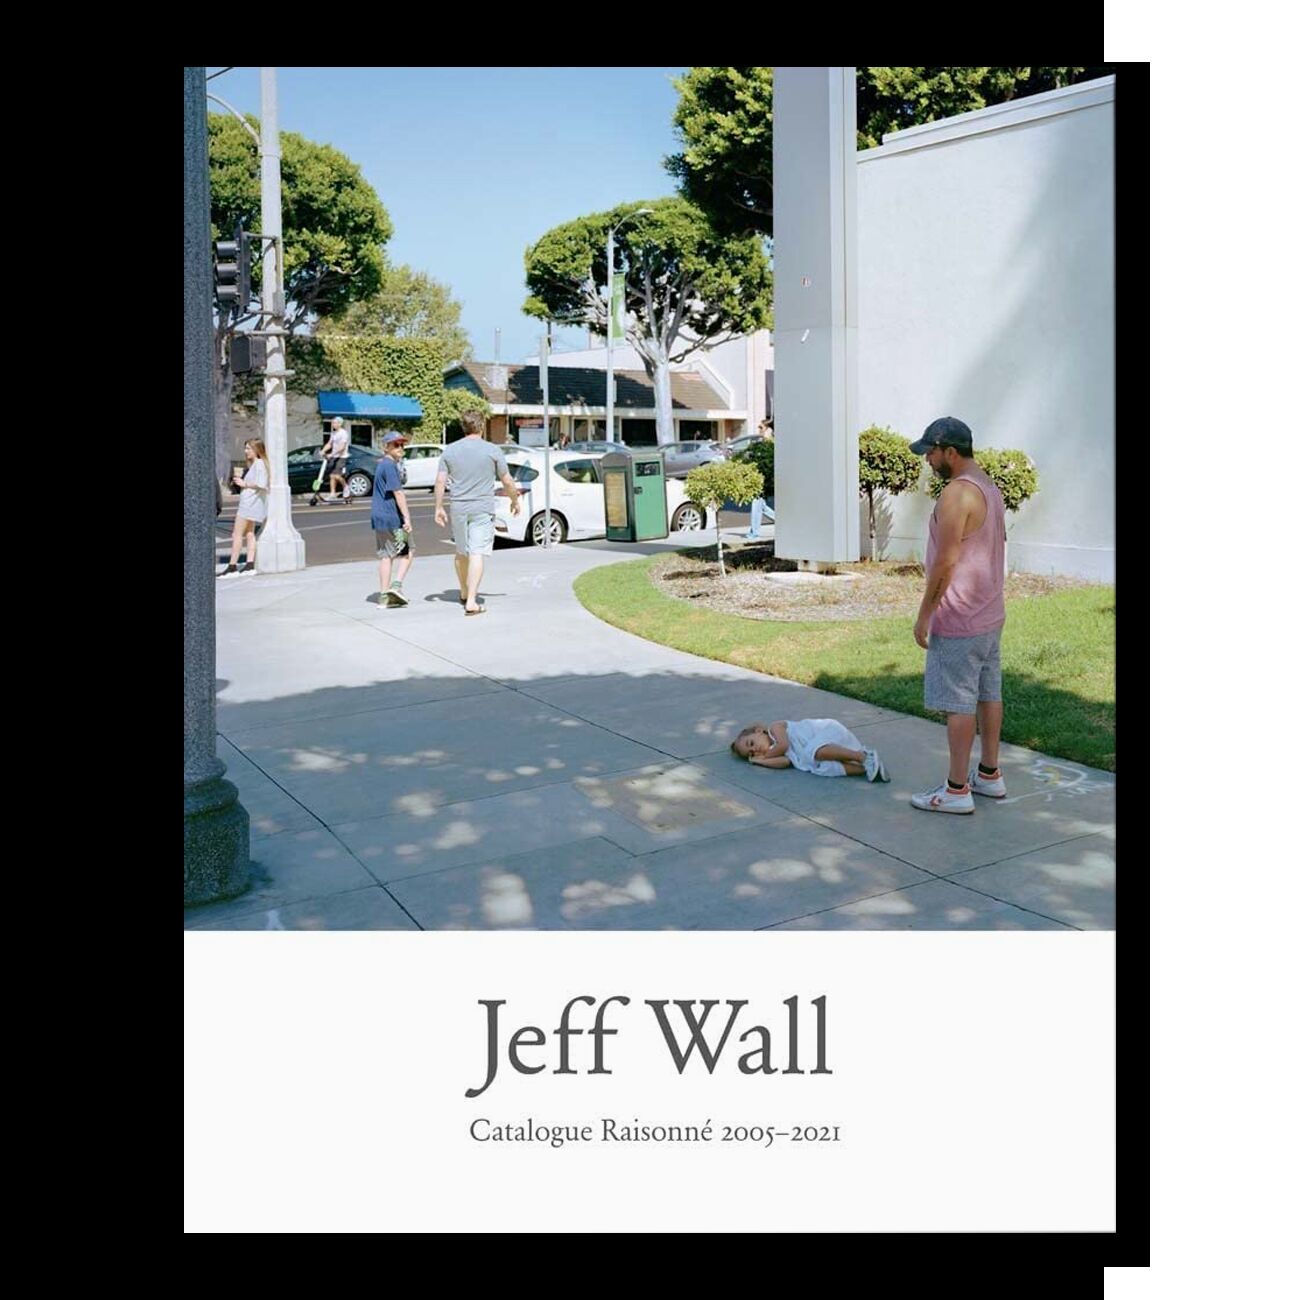 Jeff Wall: Catalogue Raisonne 2005-2021